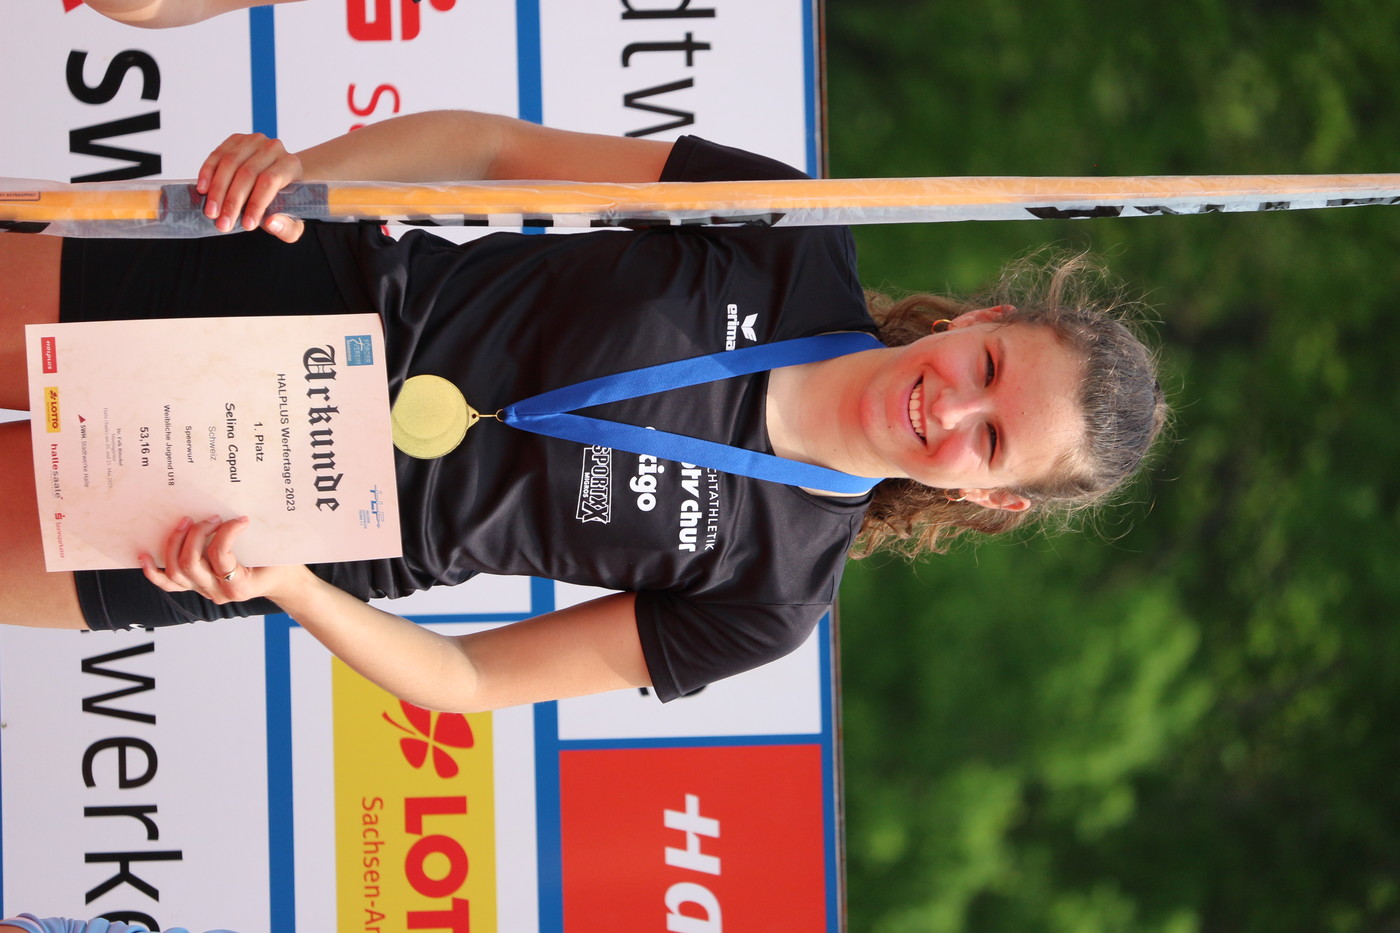 Strahlende Siegerin: Selina Capaul freut sich über den ersten Platz in der Kategorie U18.